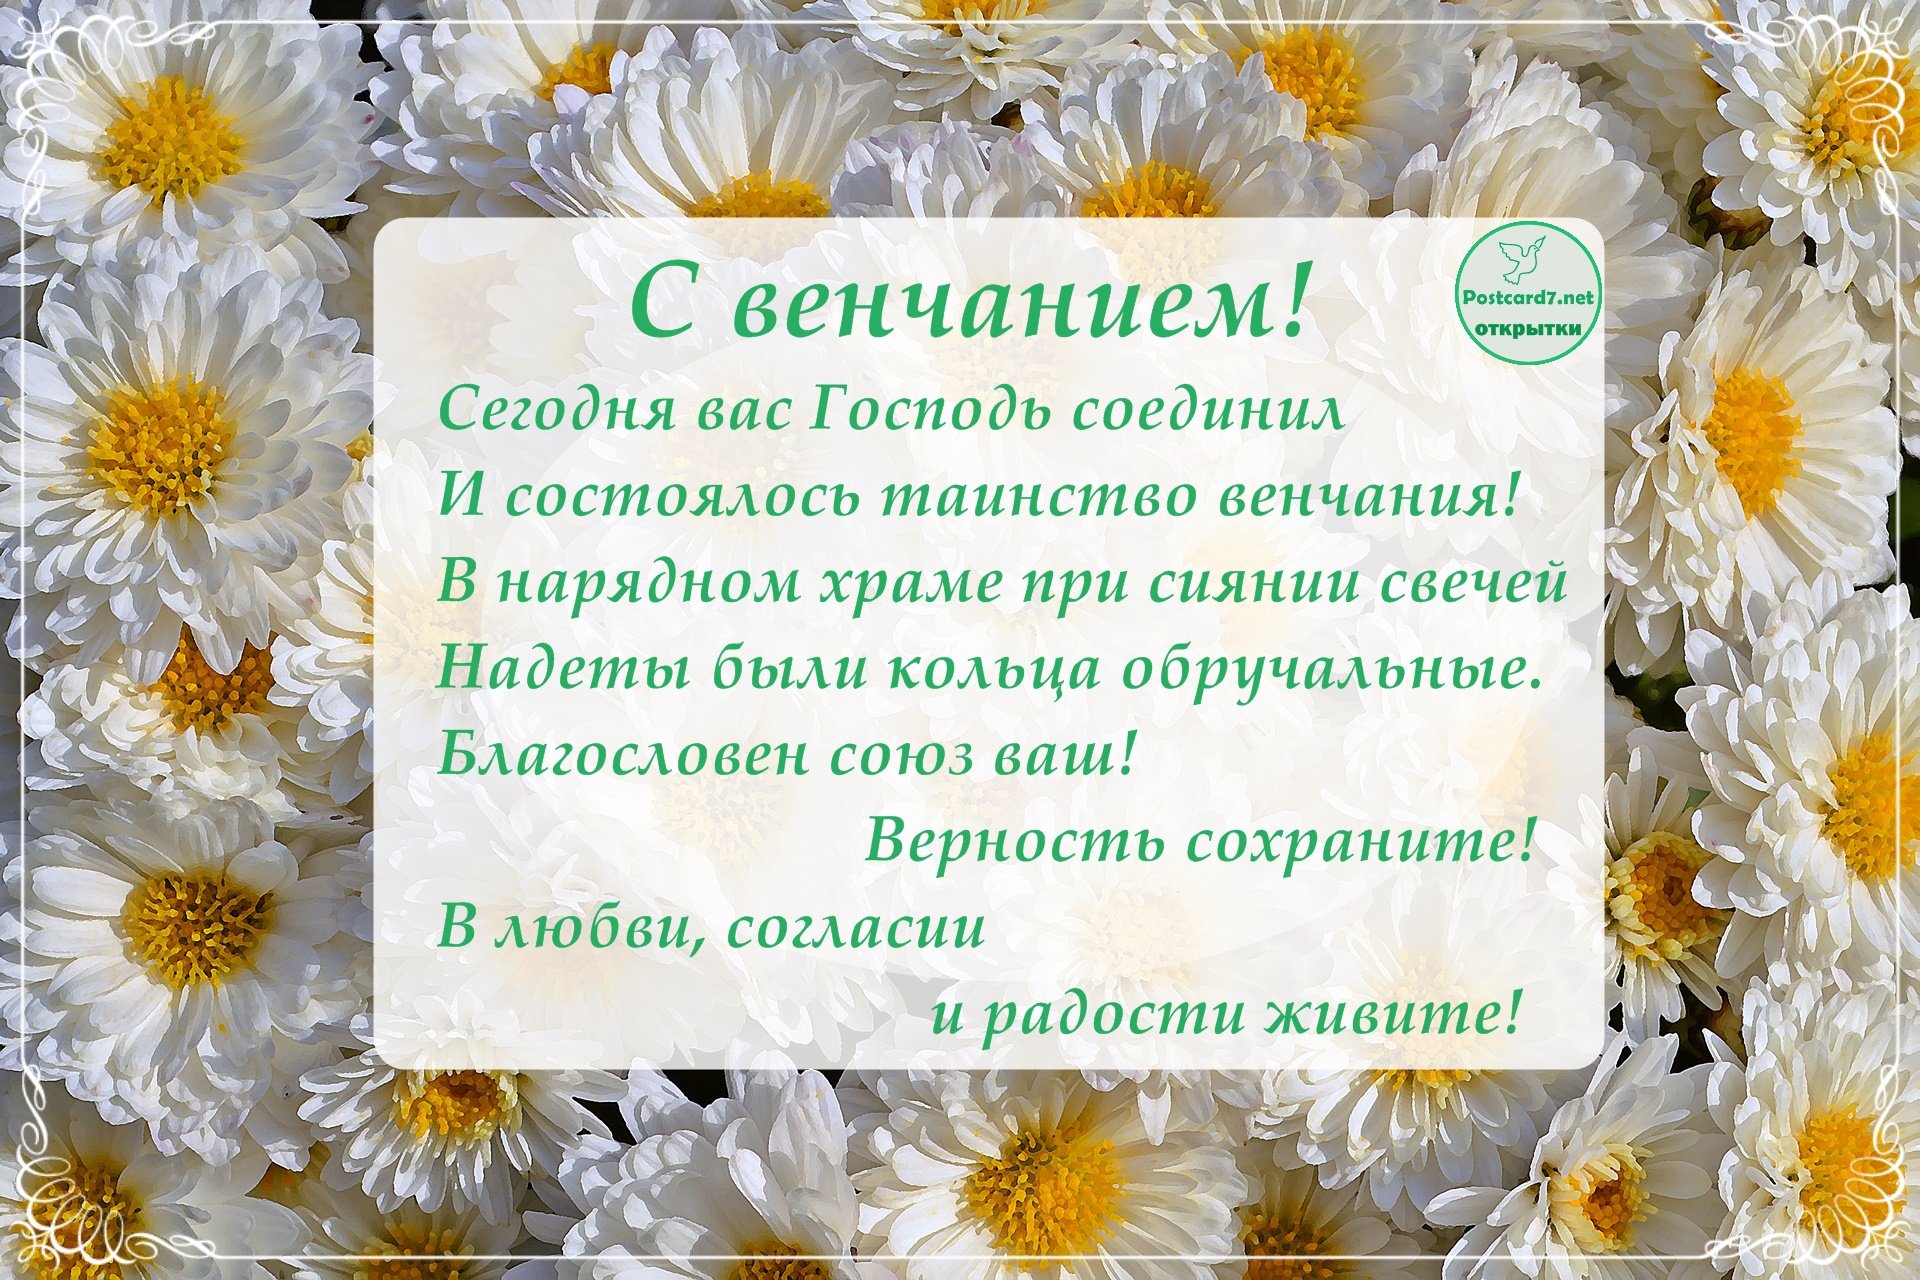 Поздравления с венчанием: как правильно поздравить | mountainline.ru